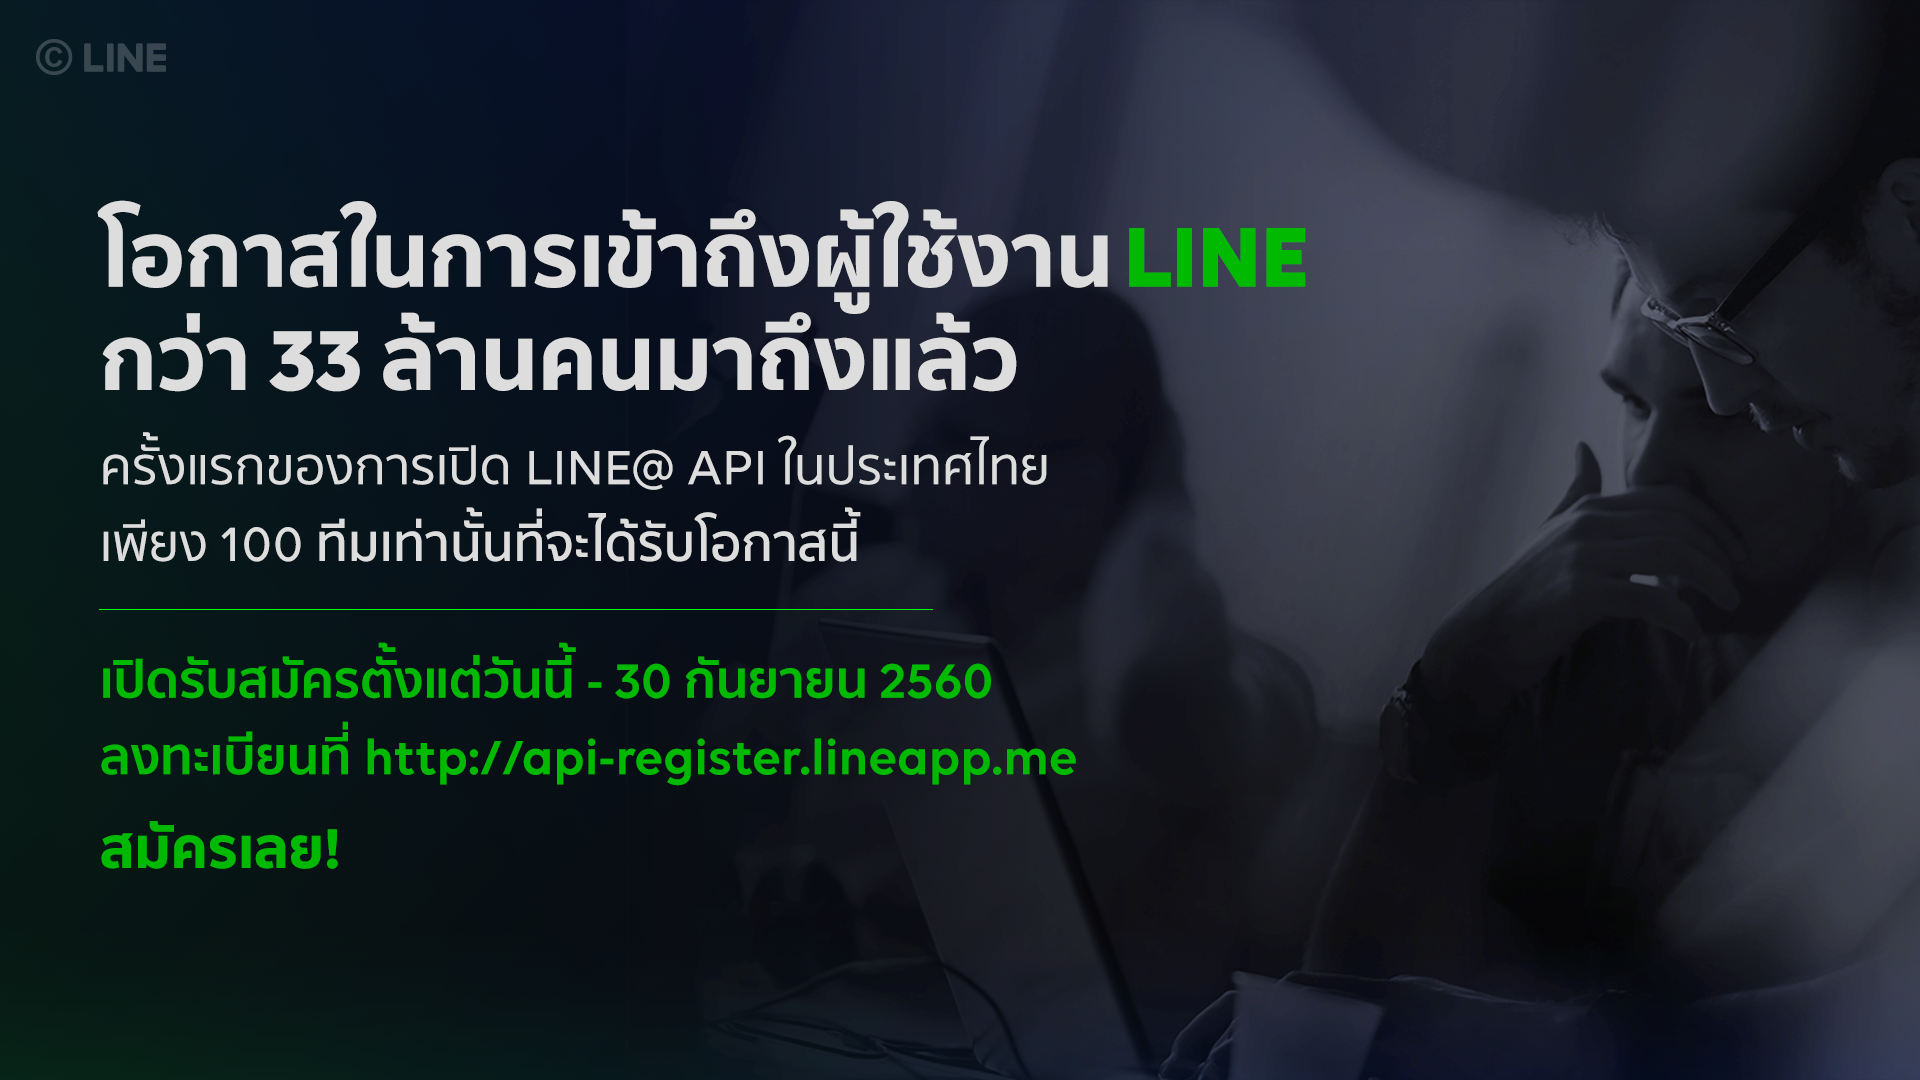 LINE เปิดให้ 100 สตาร์ทอัพไทยเข้าใช้ LINE@ API ได้ฟรี มุ่งพัฒนา Chat Bot ไทย